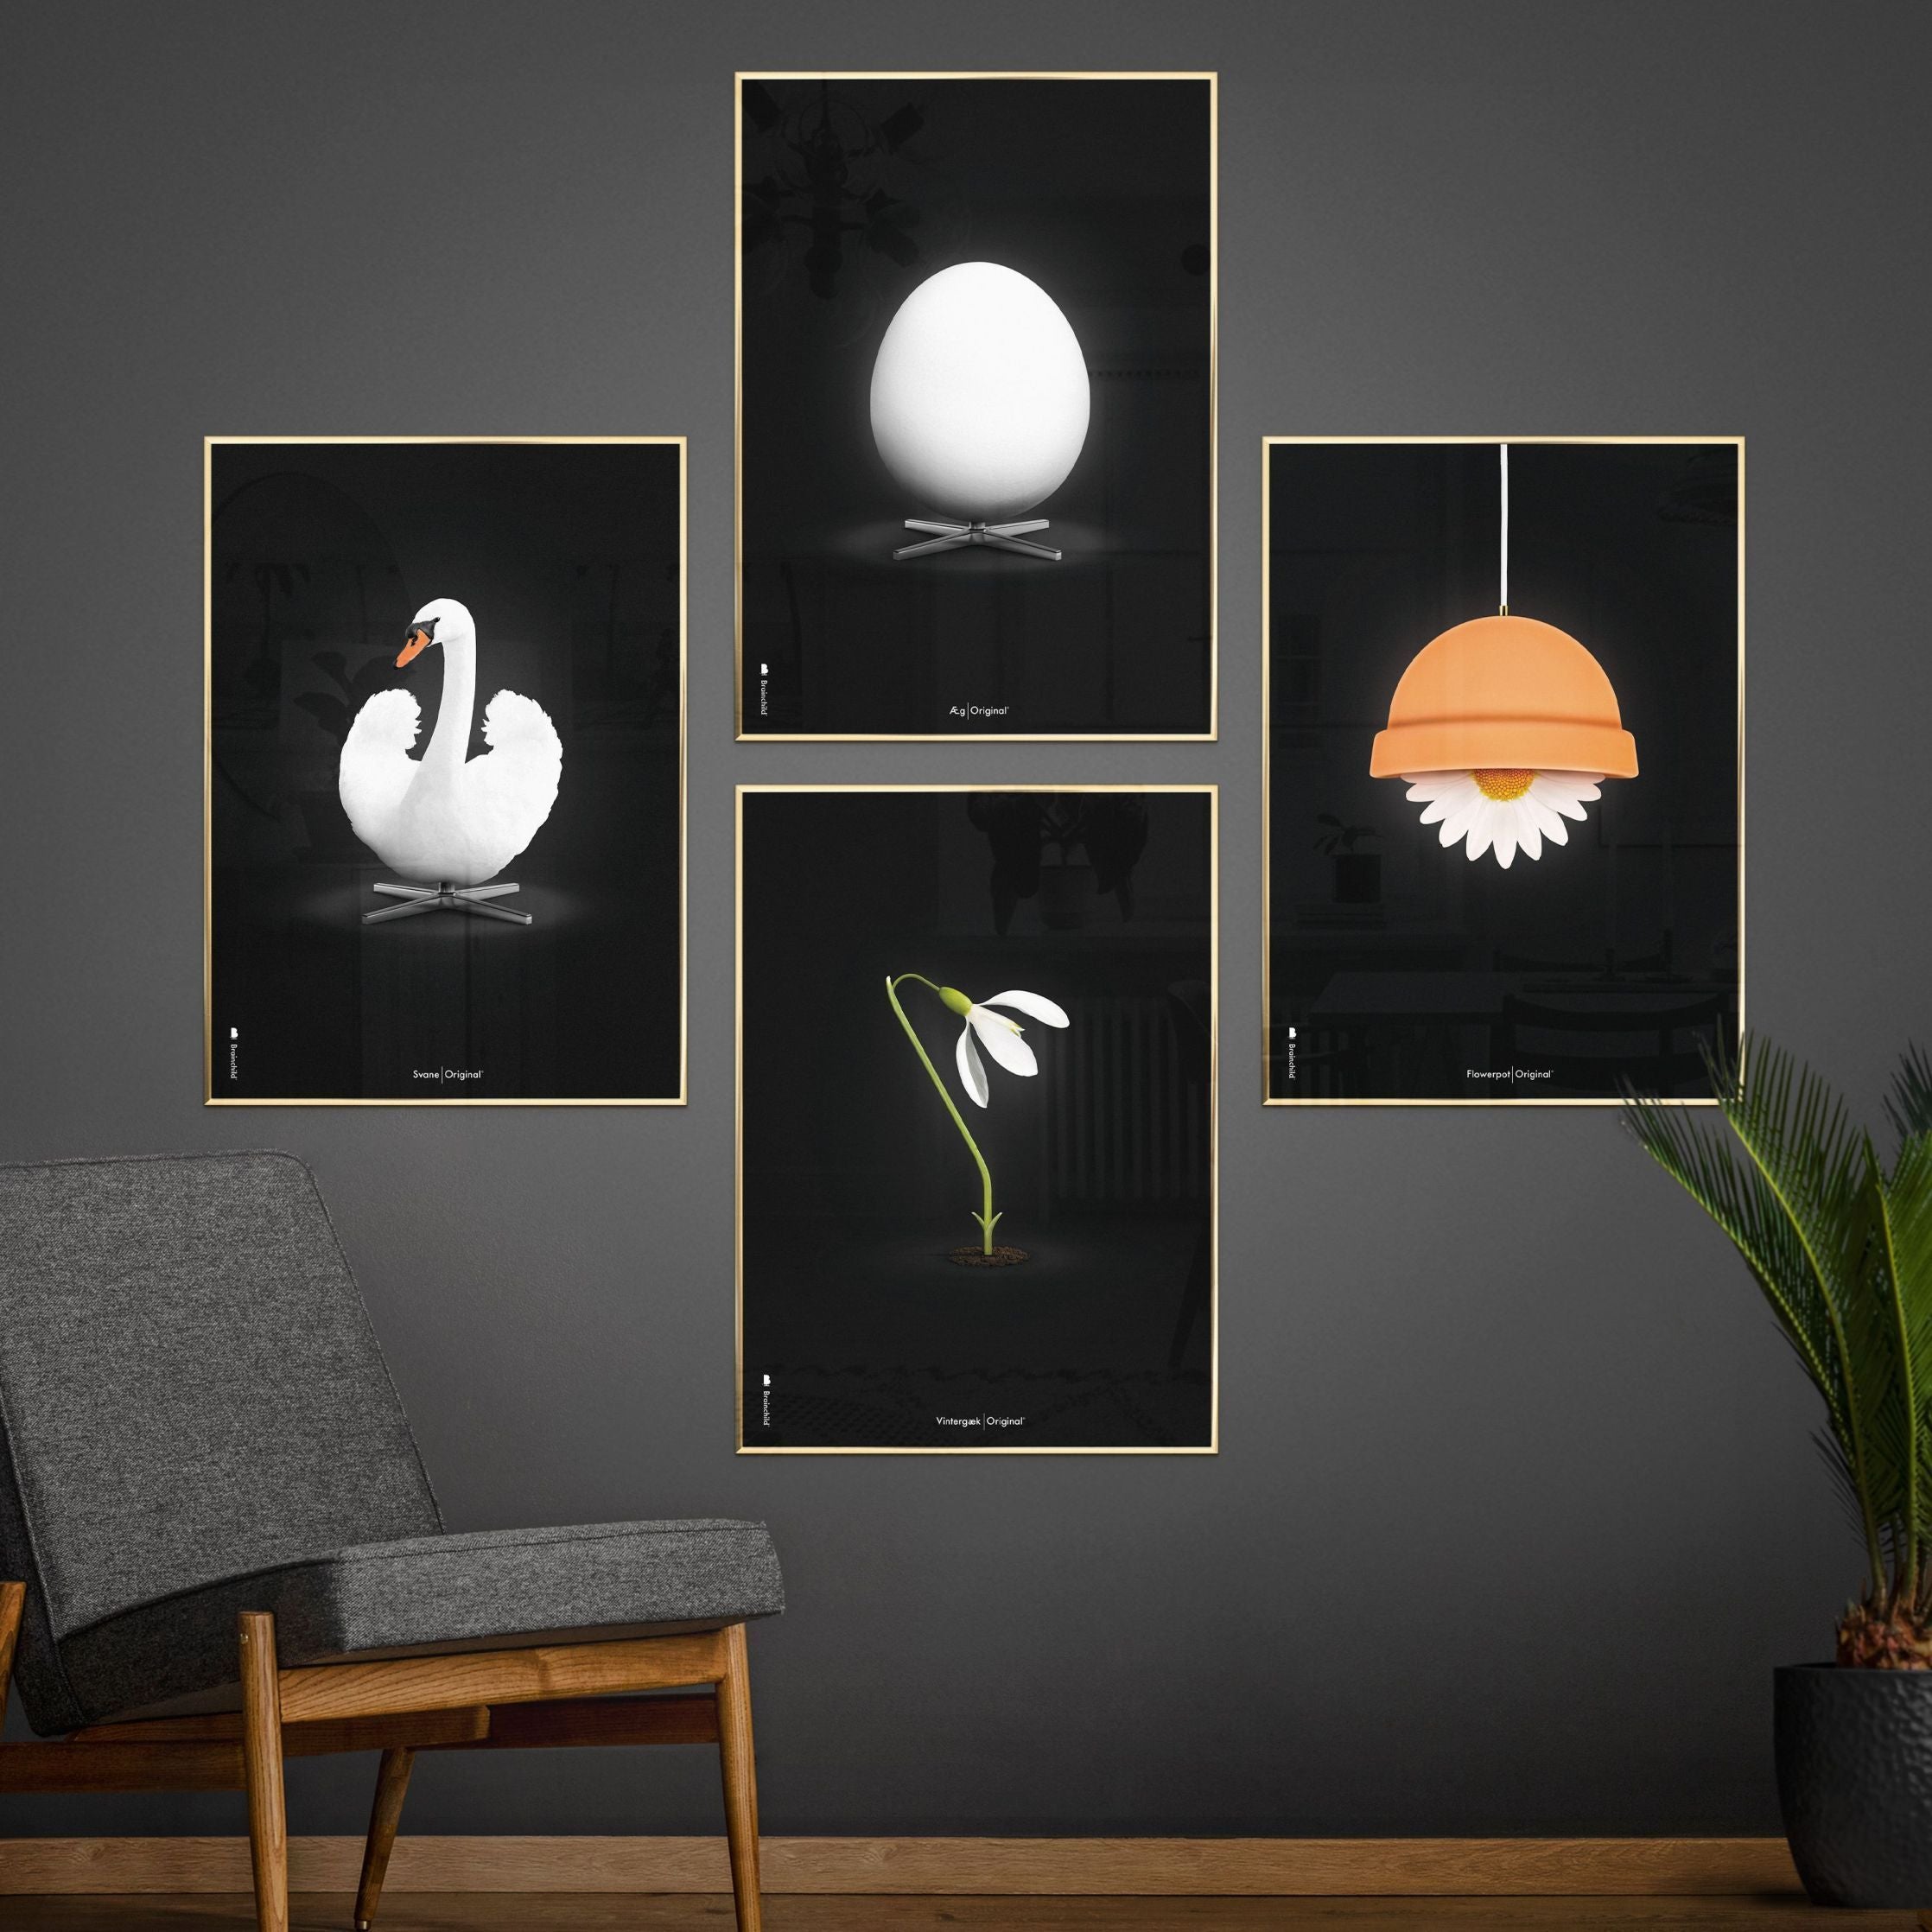 创意鸡蛋经典海报，由深木50x70厘米制成的框架，黑色背景